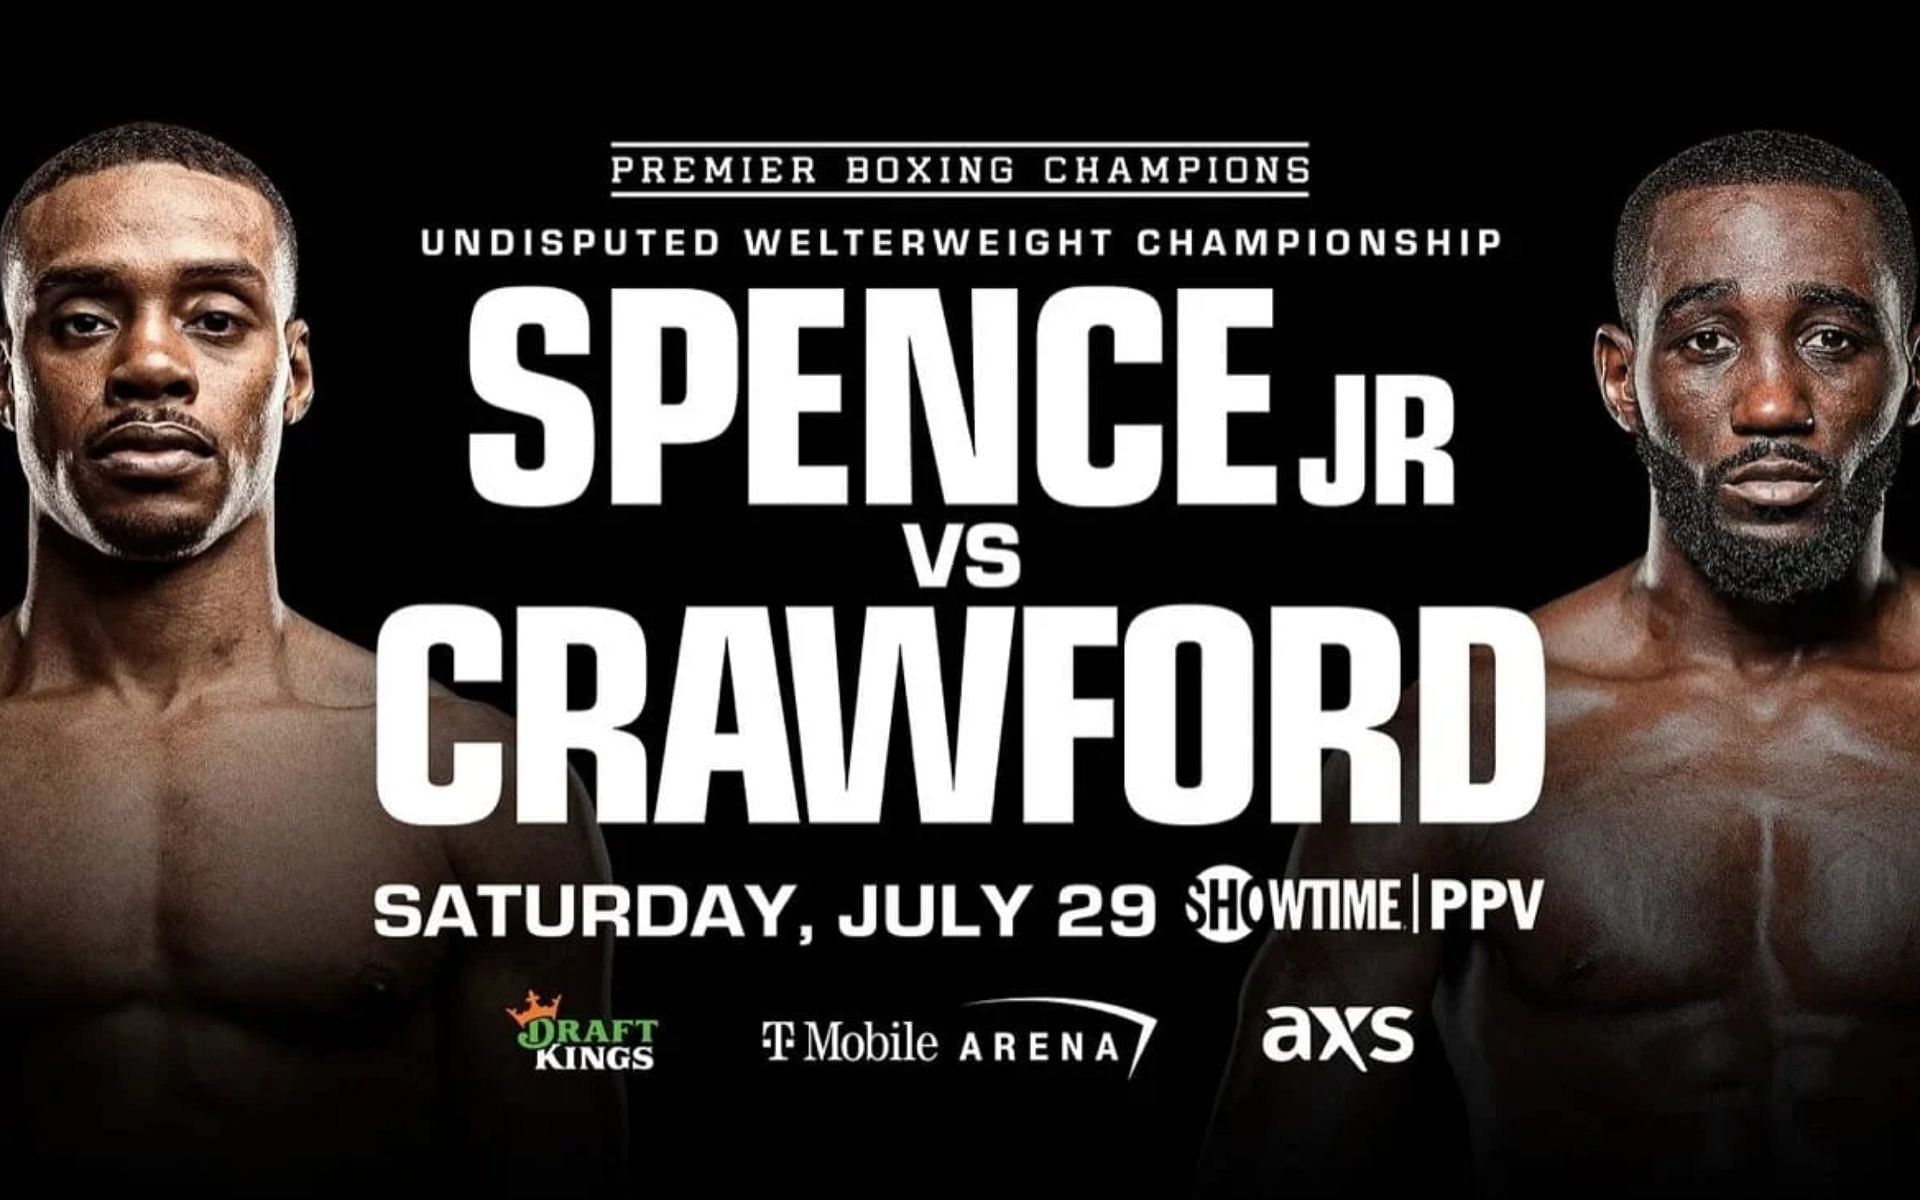 Terence Crawford vs. Errol Spence Jr. PPV Errol Spence Jr